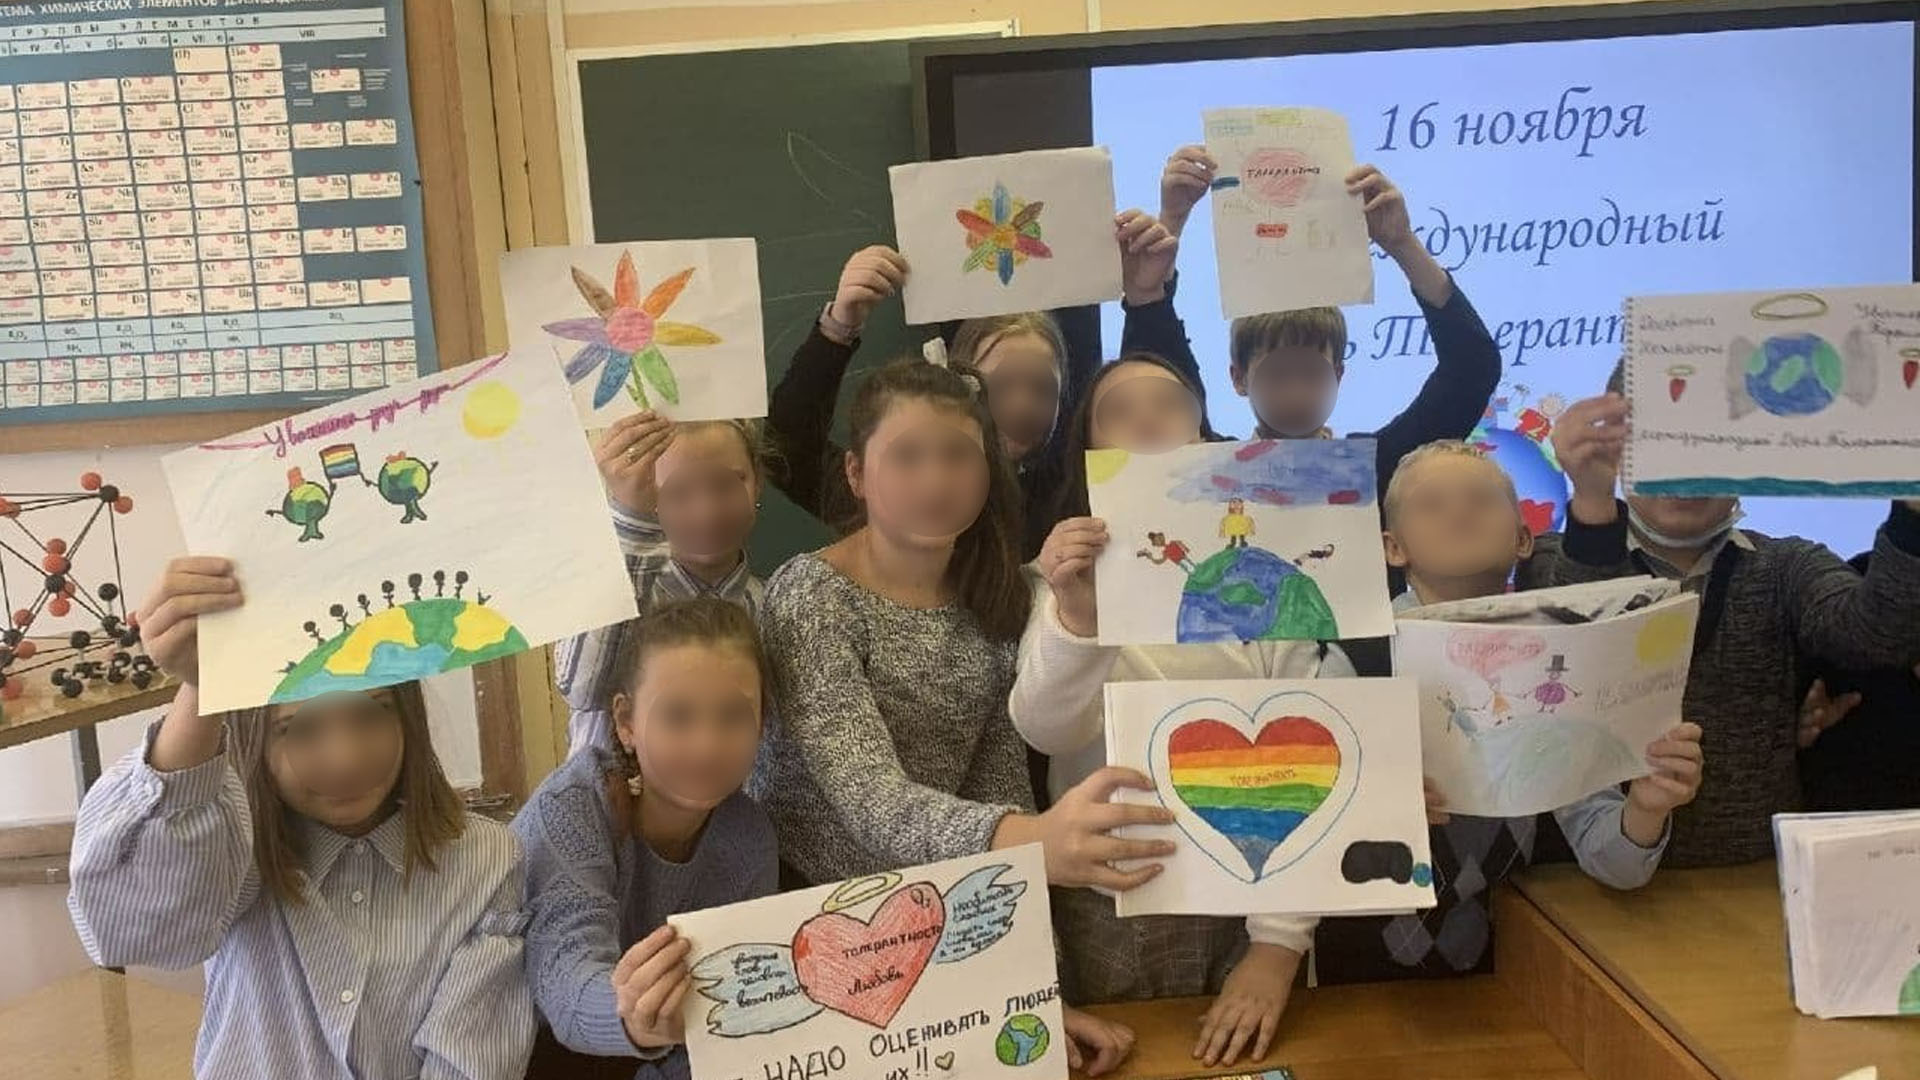 ЗАШЛИ СЗАДИ: В РОССИЙСКИХ ШКОЛАХ СНОВА ПРОДВИГАЮТ ЛГБТ ЧЕРЕЗ "ДНИ ТОЛЕРАНТНОСТИ"